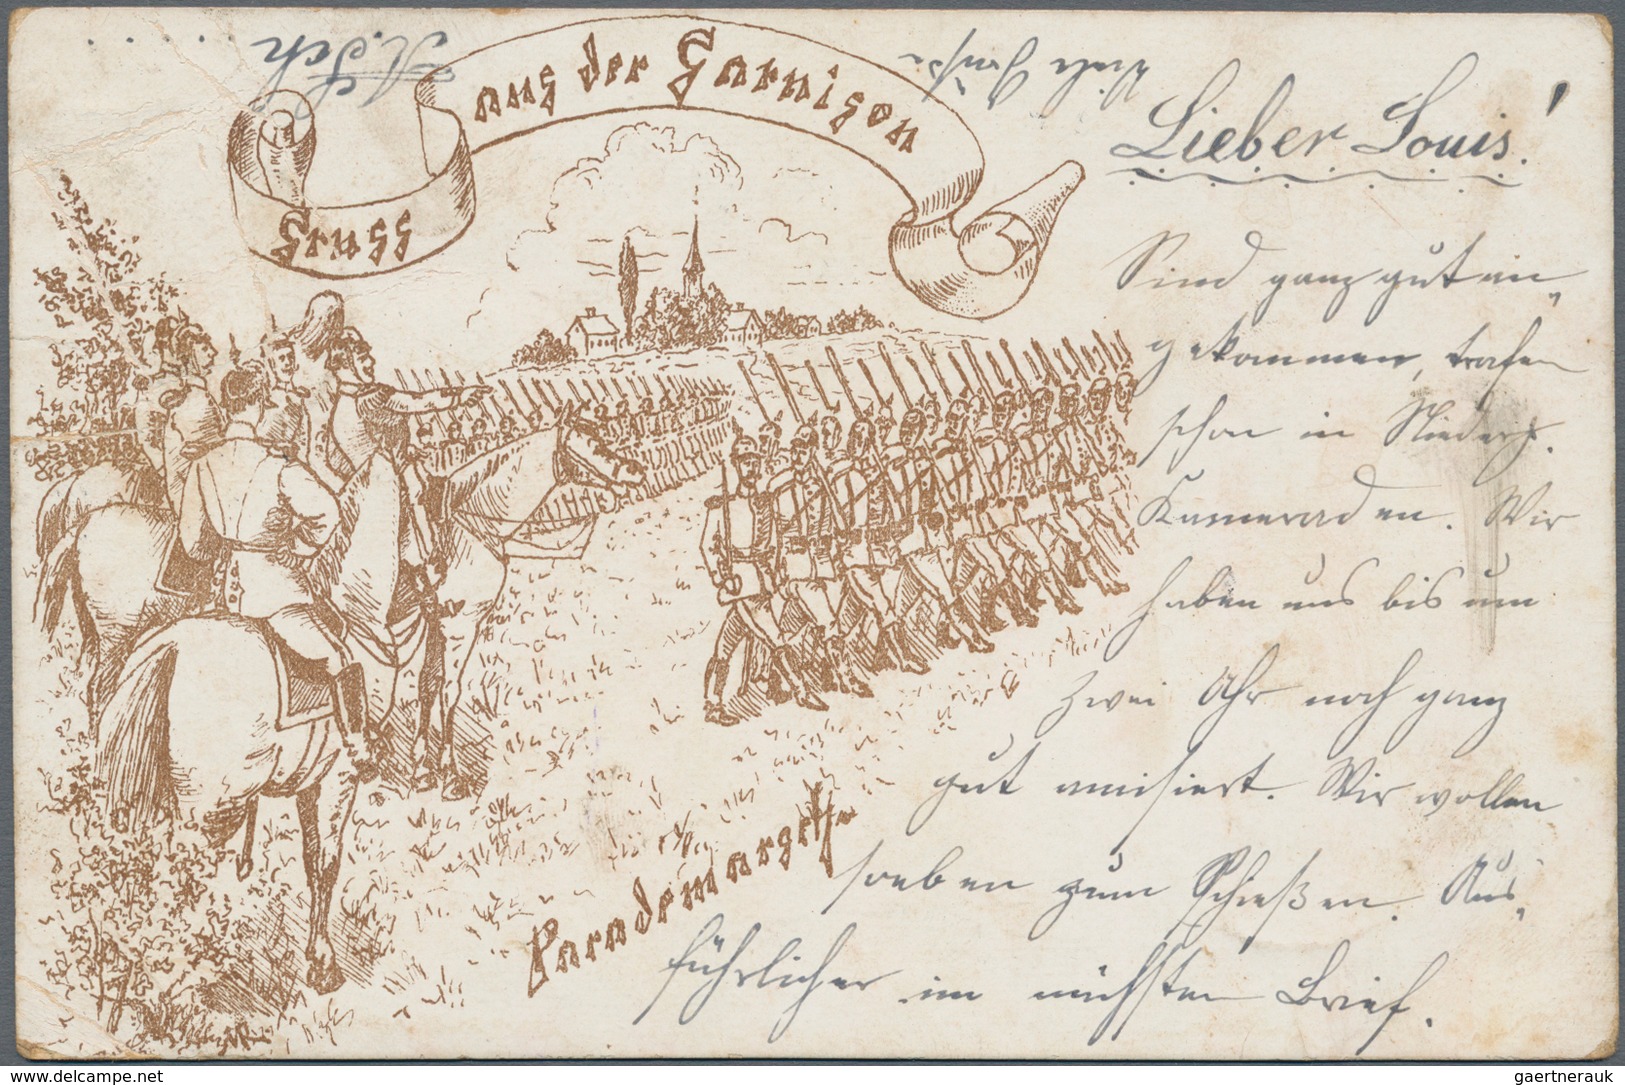 Ansichtskarten: Deutschland: 1891/1940 (ca.), Posten von ca. 240 Ansichtskarten bzw. auch einigen we